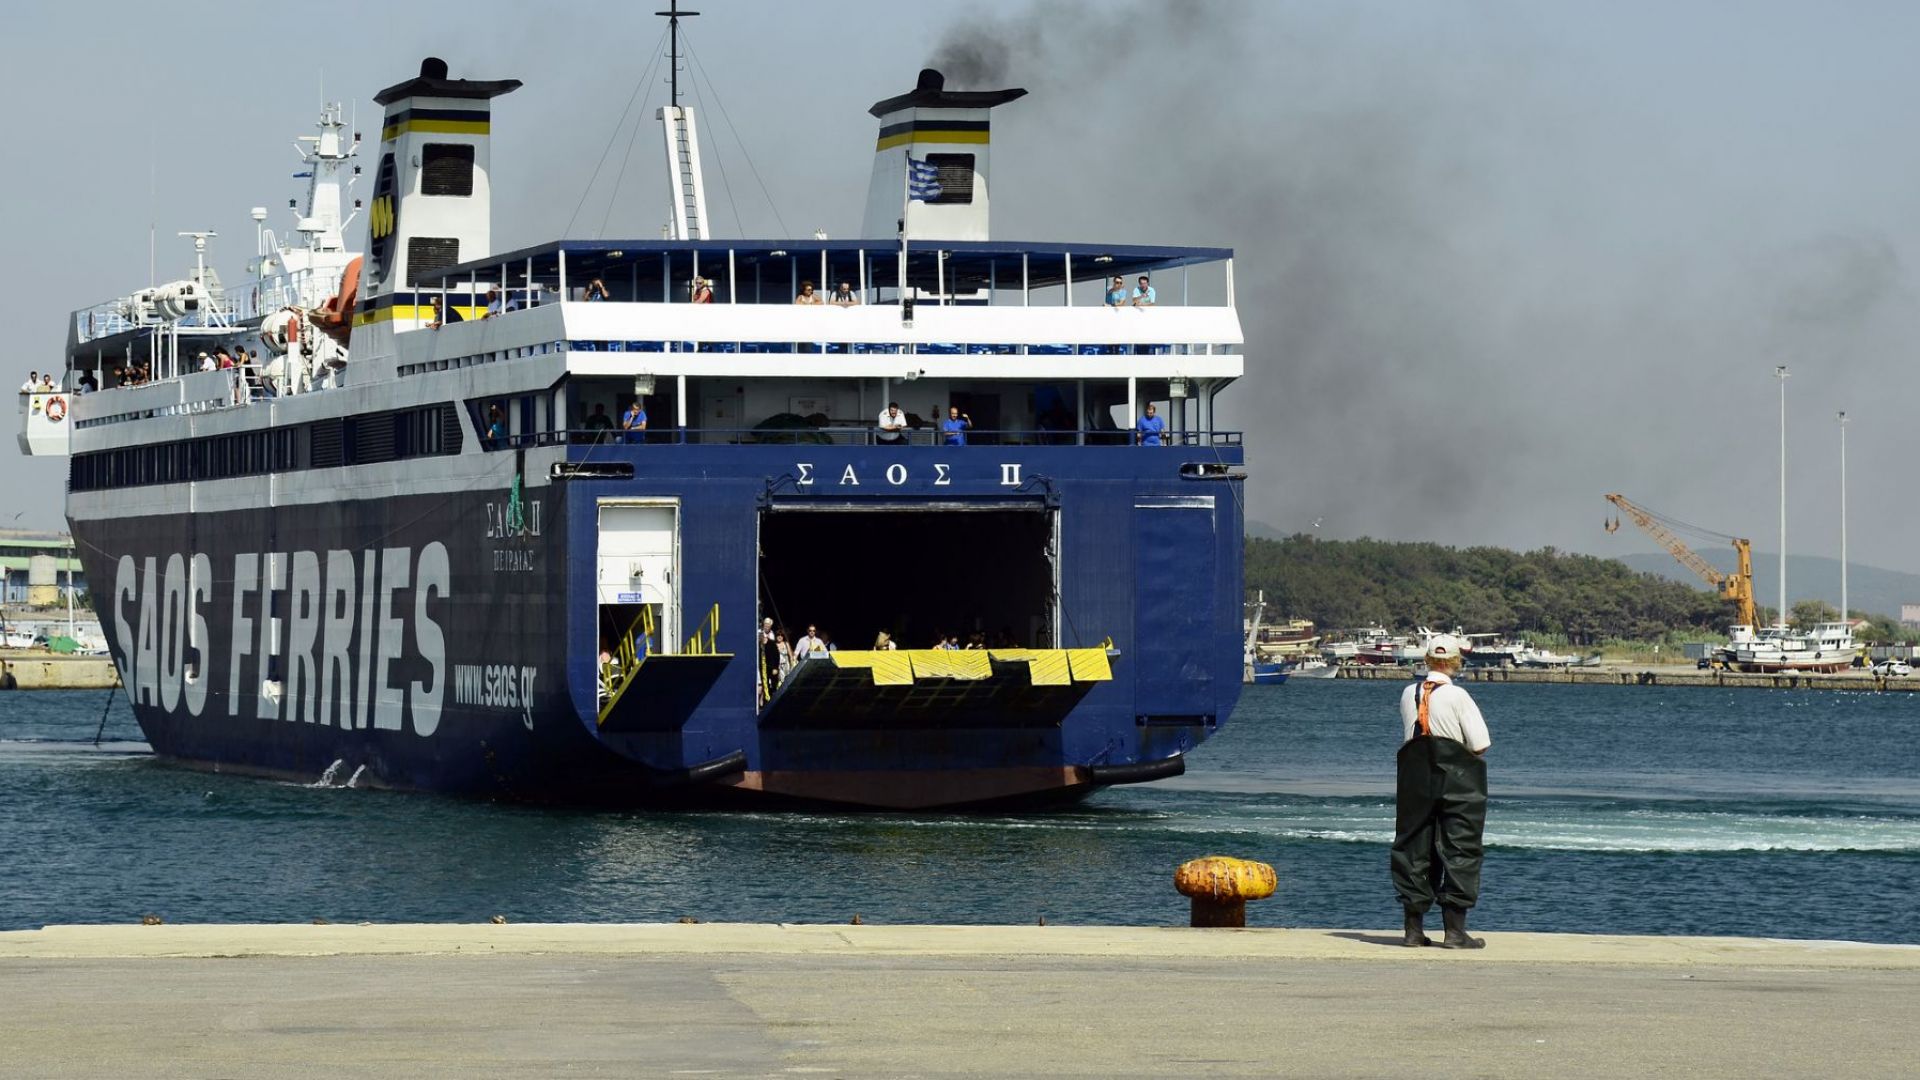 Гърция възстанови фериботните услуги до всички острови